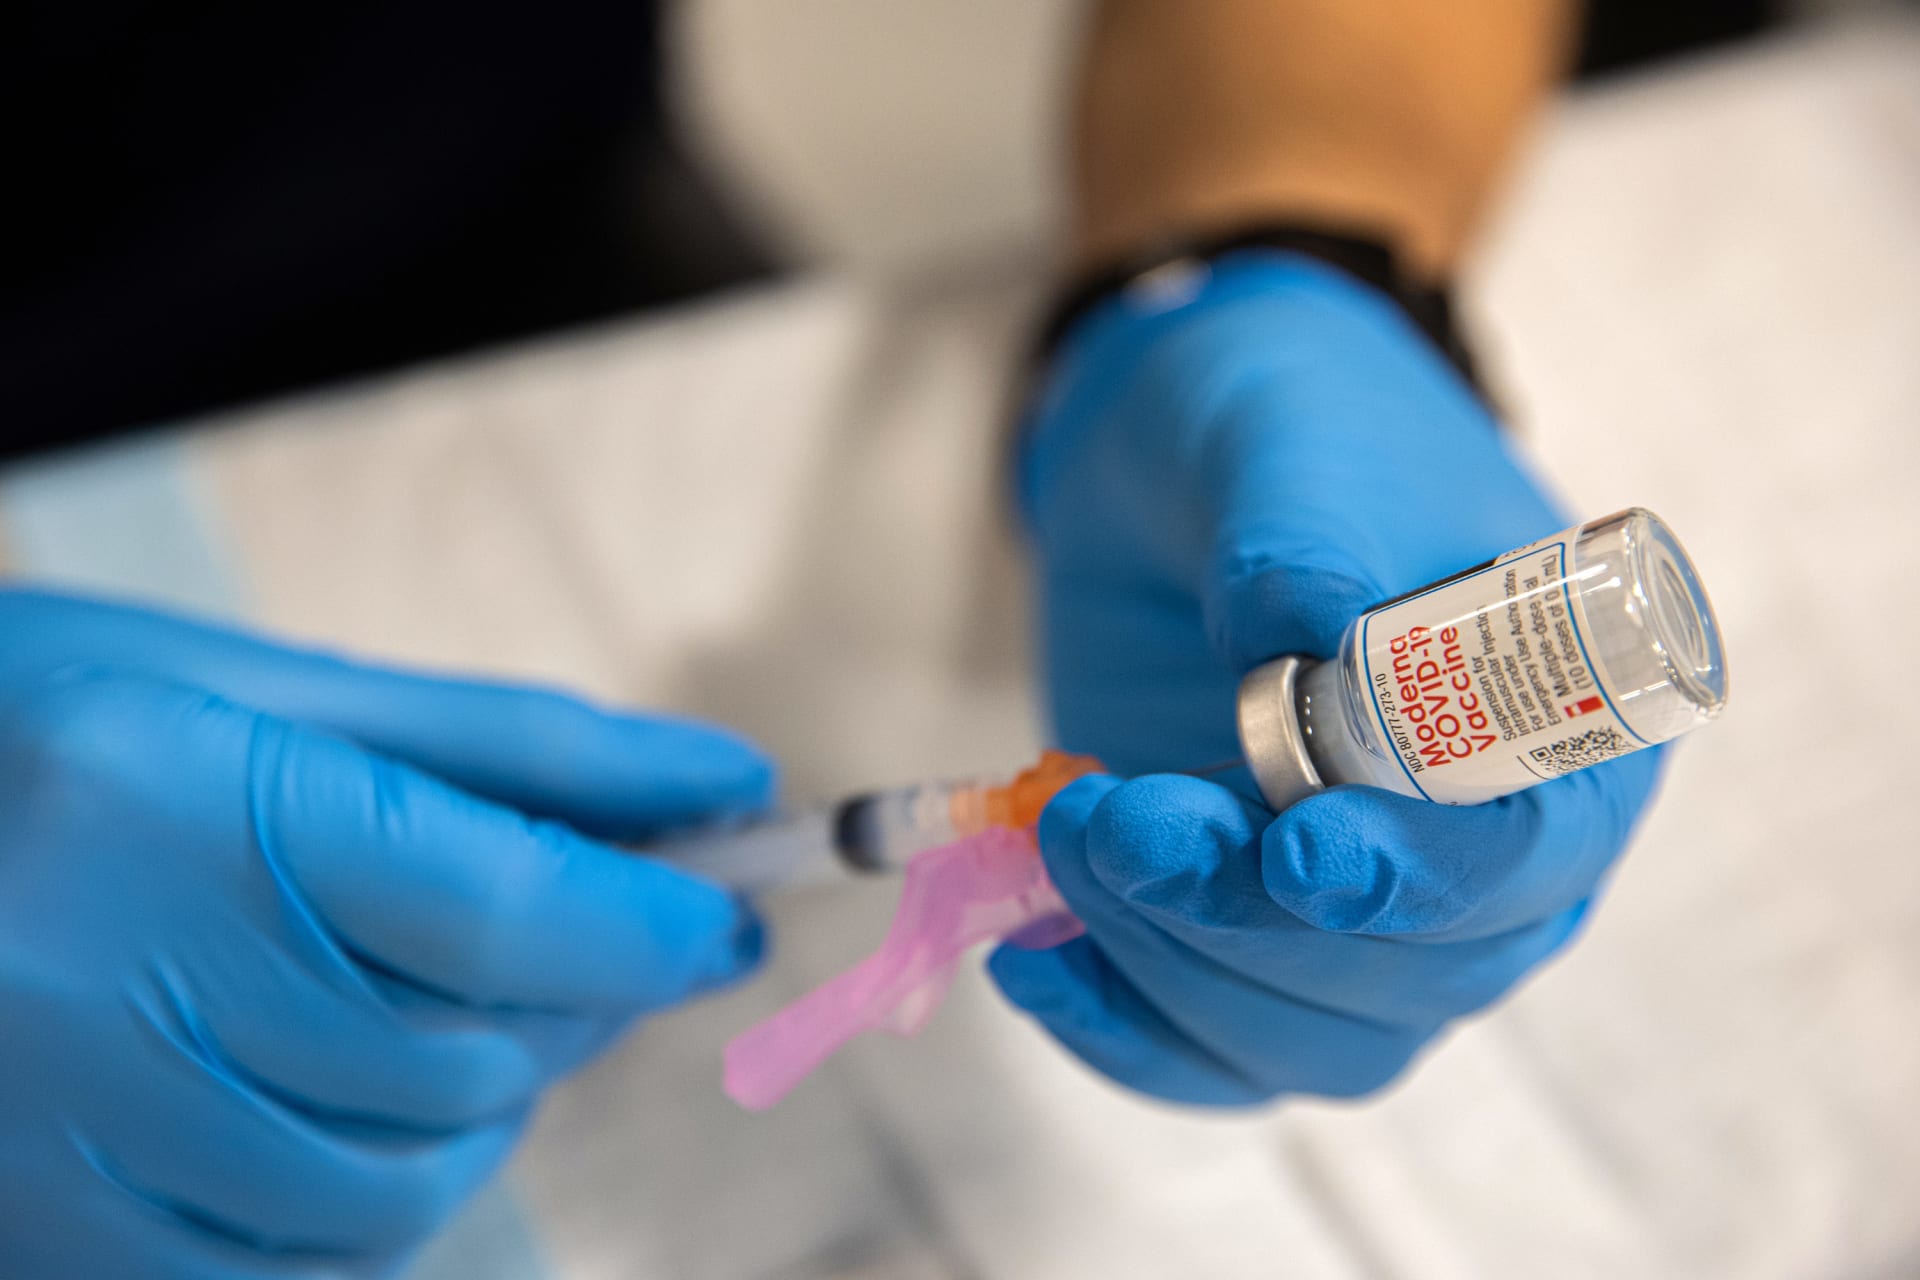 ردود الفعل التحسسية الشديدة للقاح كورونا من "مودرنا" نادرة